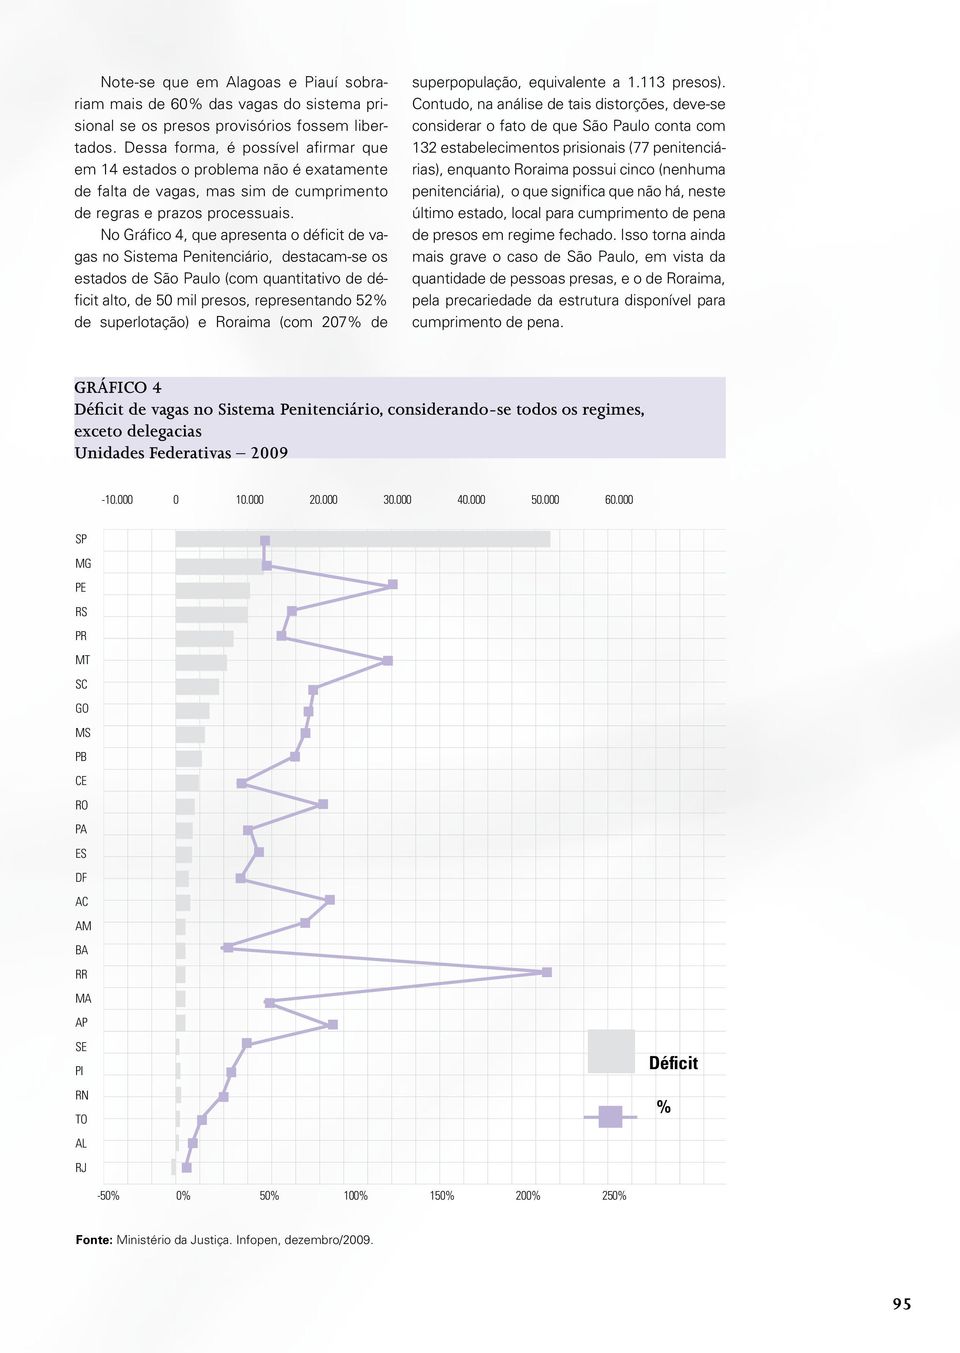 No Gráfico 4, que apresenta o déficit de vagas no Sistema Penitenciário, destacam-se os estados de São Paulo (com quantitativo de déficit alto, de 50 mil presos, representando 52% de superlotação) e